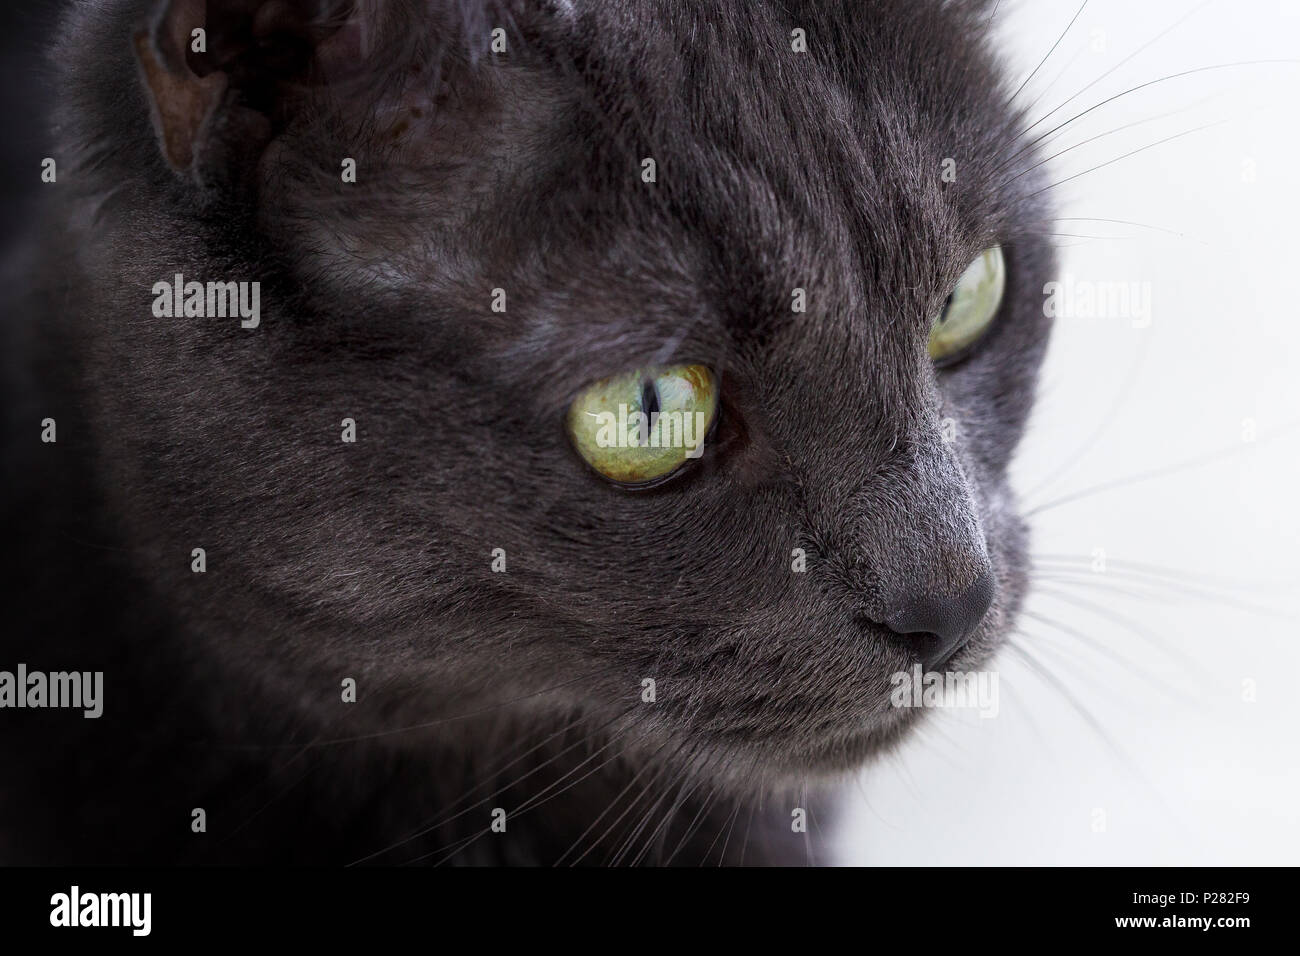 Close up portrait of cats face Banque D'Images